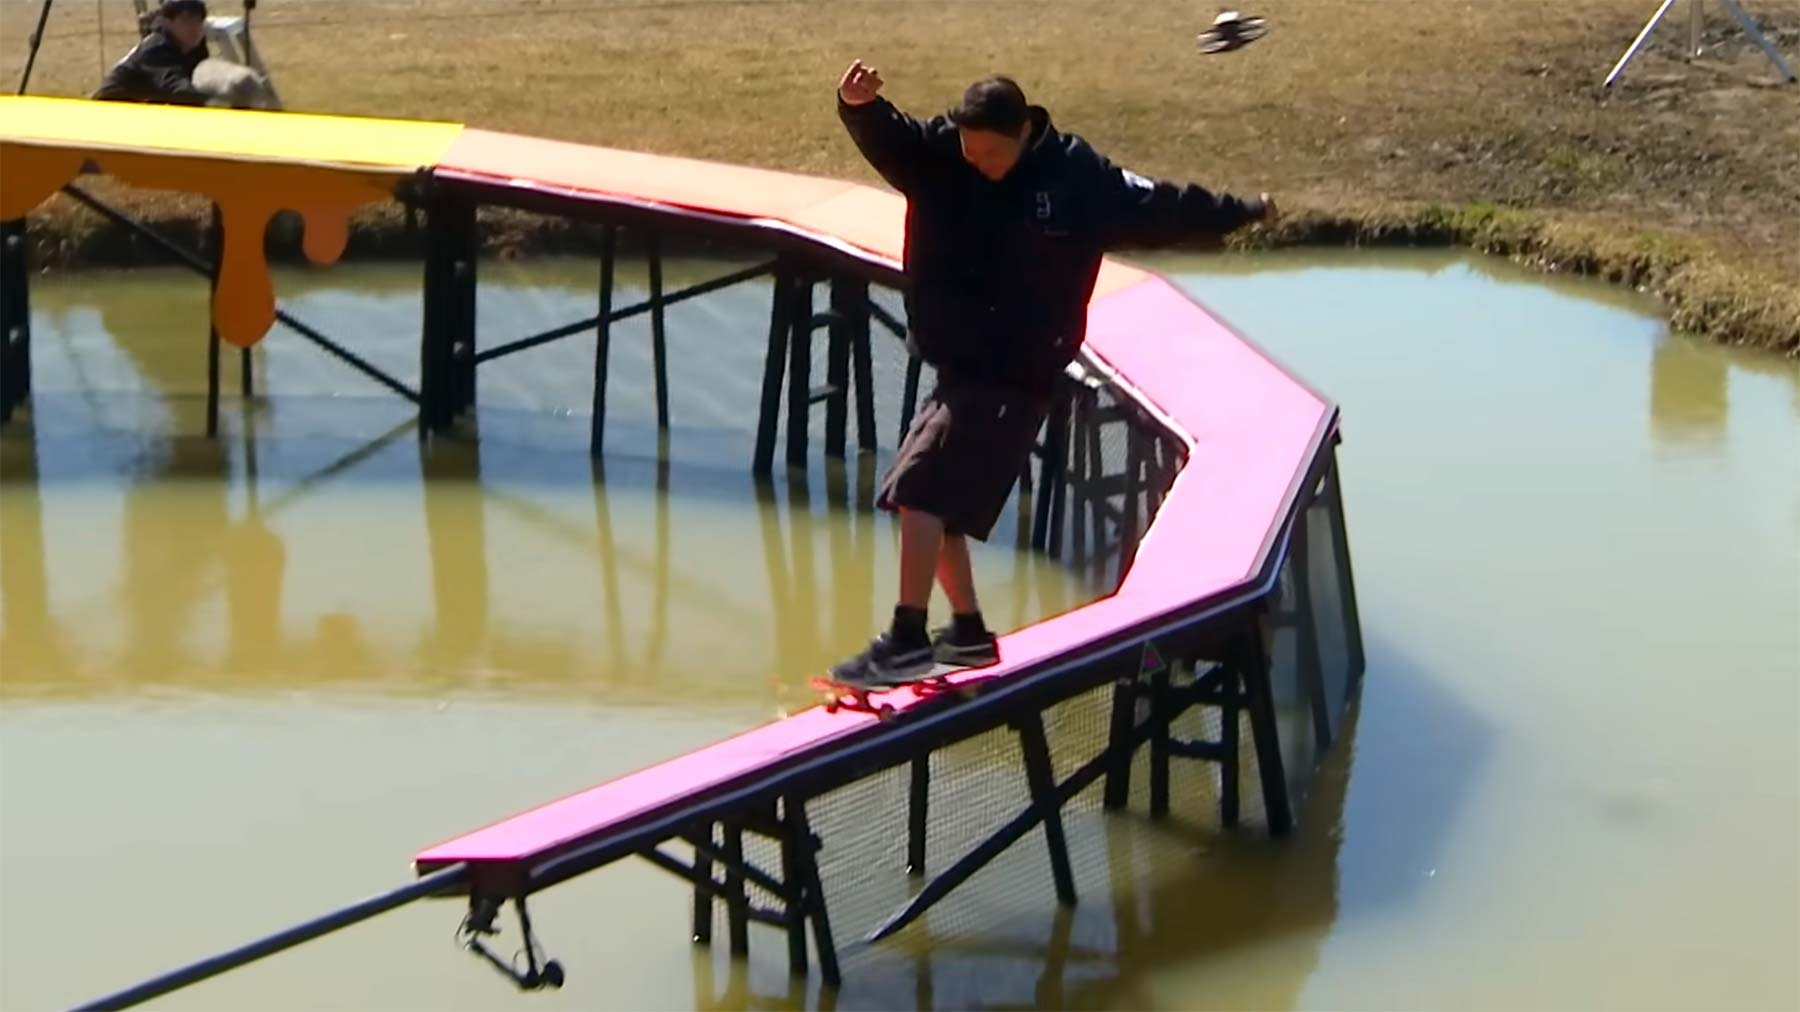 Japanische TV-Sendung lässt Skateboarder über Hindernisse fahren KASSO-japanische-tv-sendung-mit-skateboard-hindernissen 